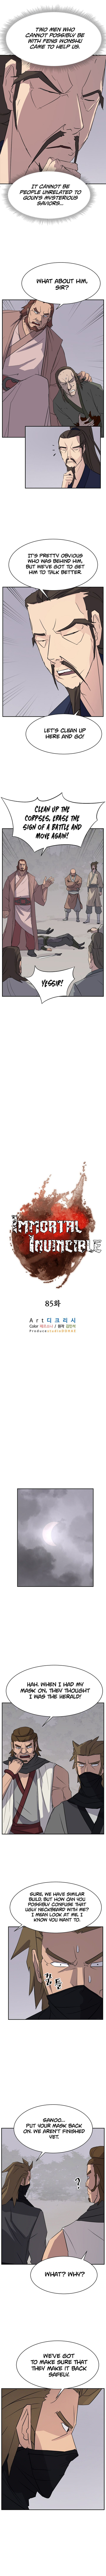 immortal_invincible_85_4